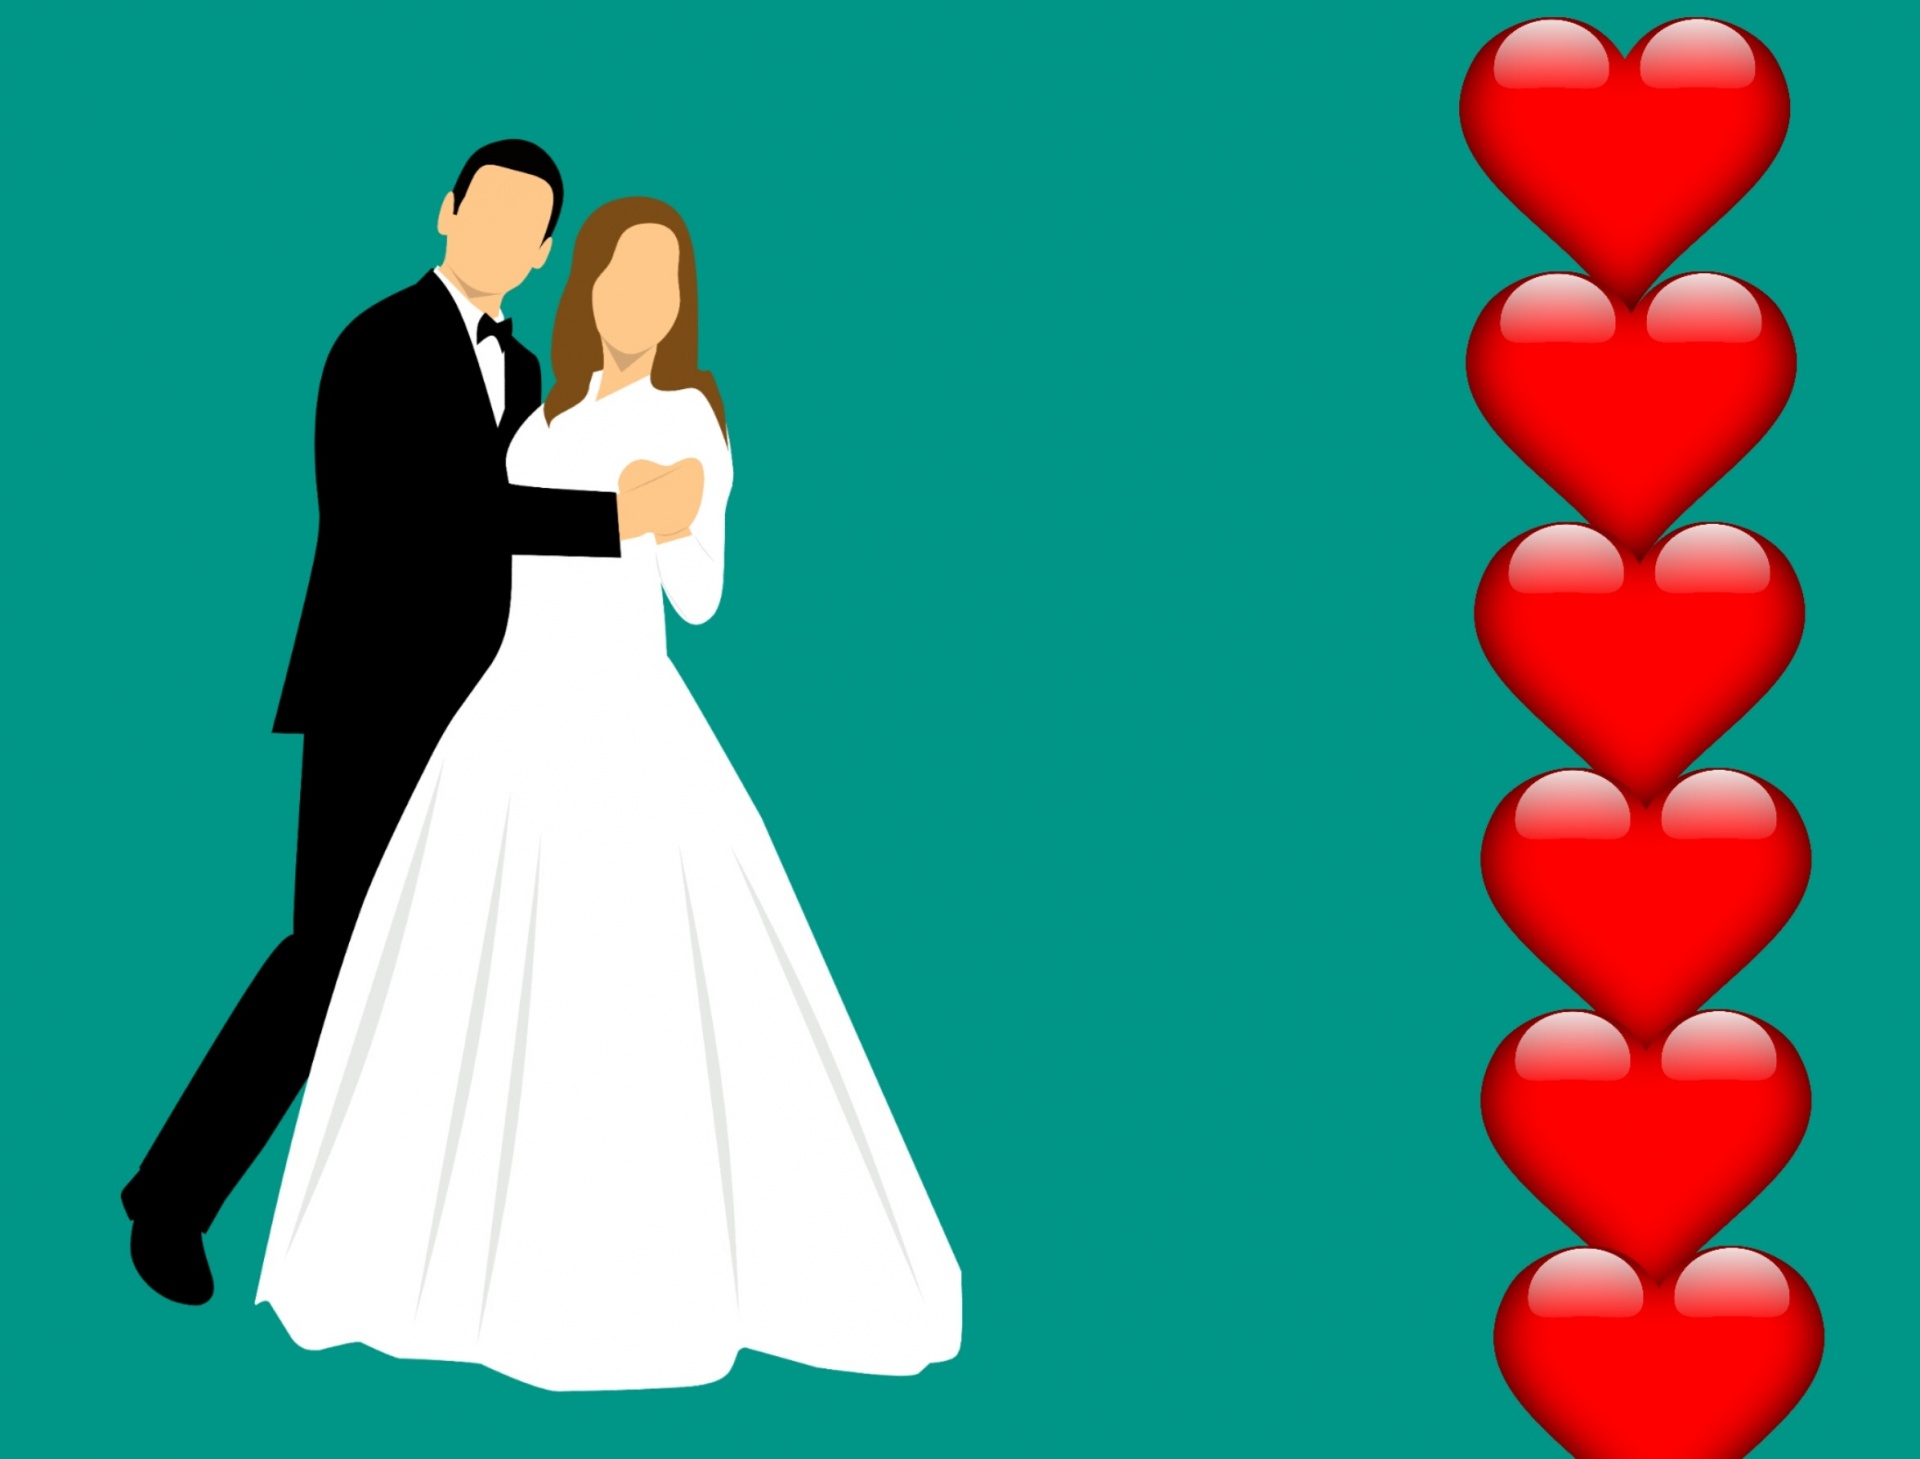 https://www.publicdomainpictures.net/pictures/250000/velka/marriage-wedding-background.jpg